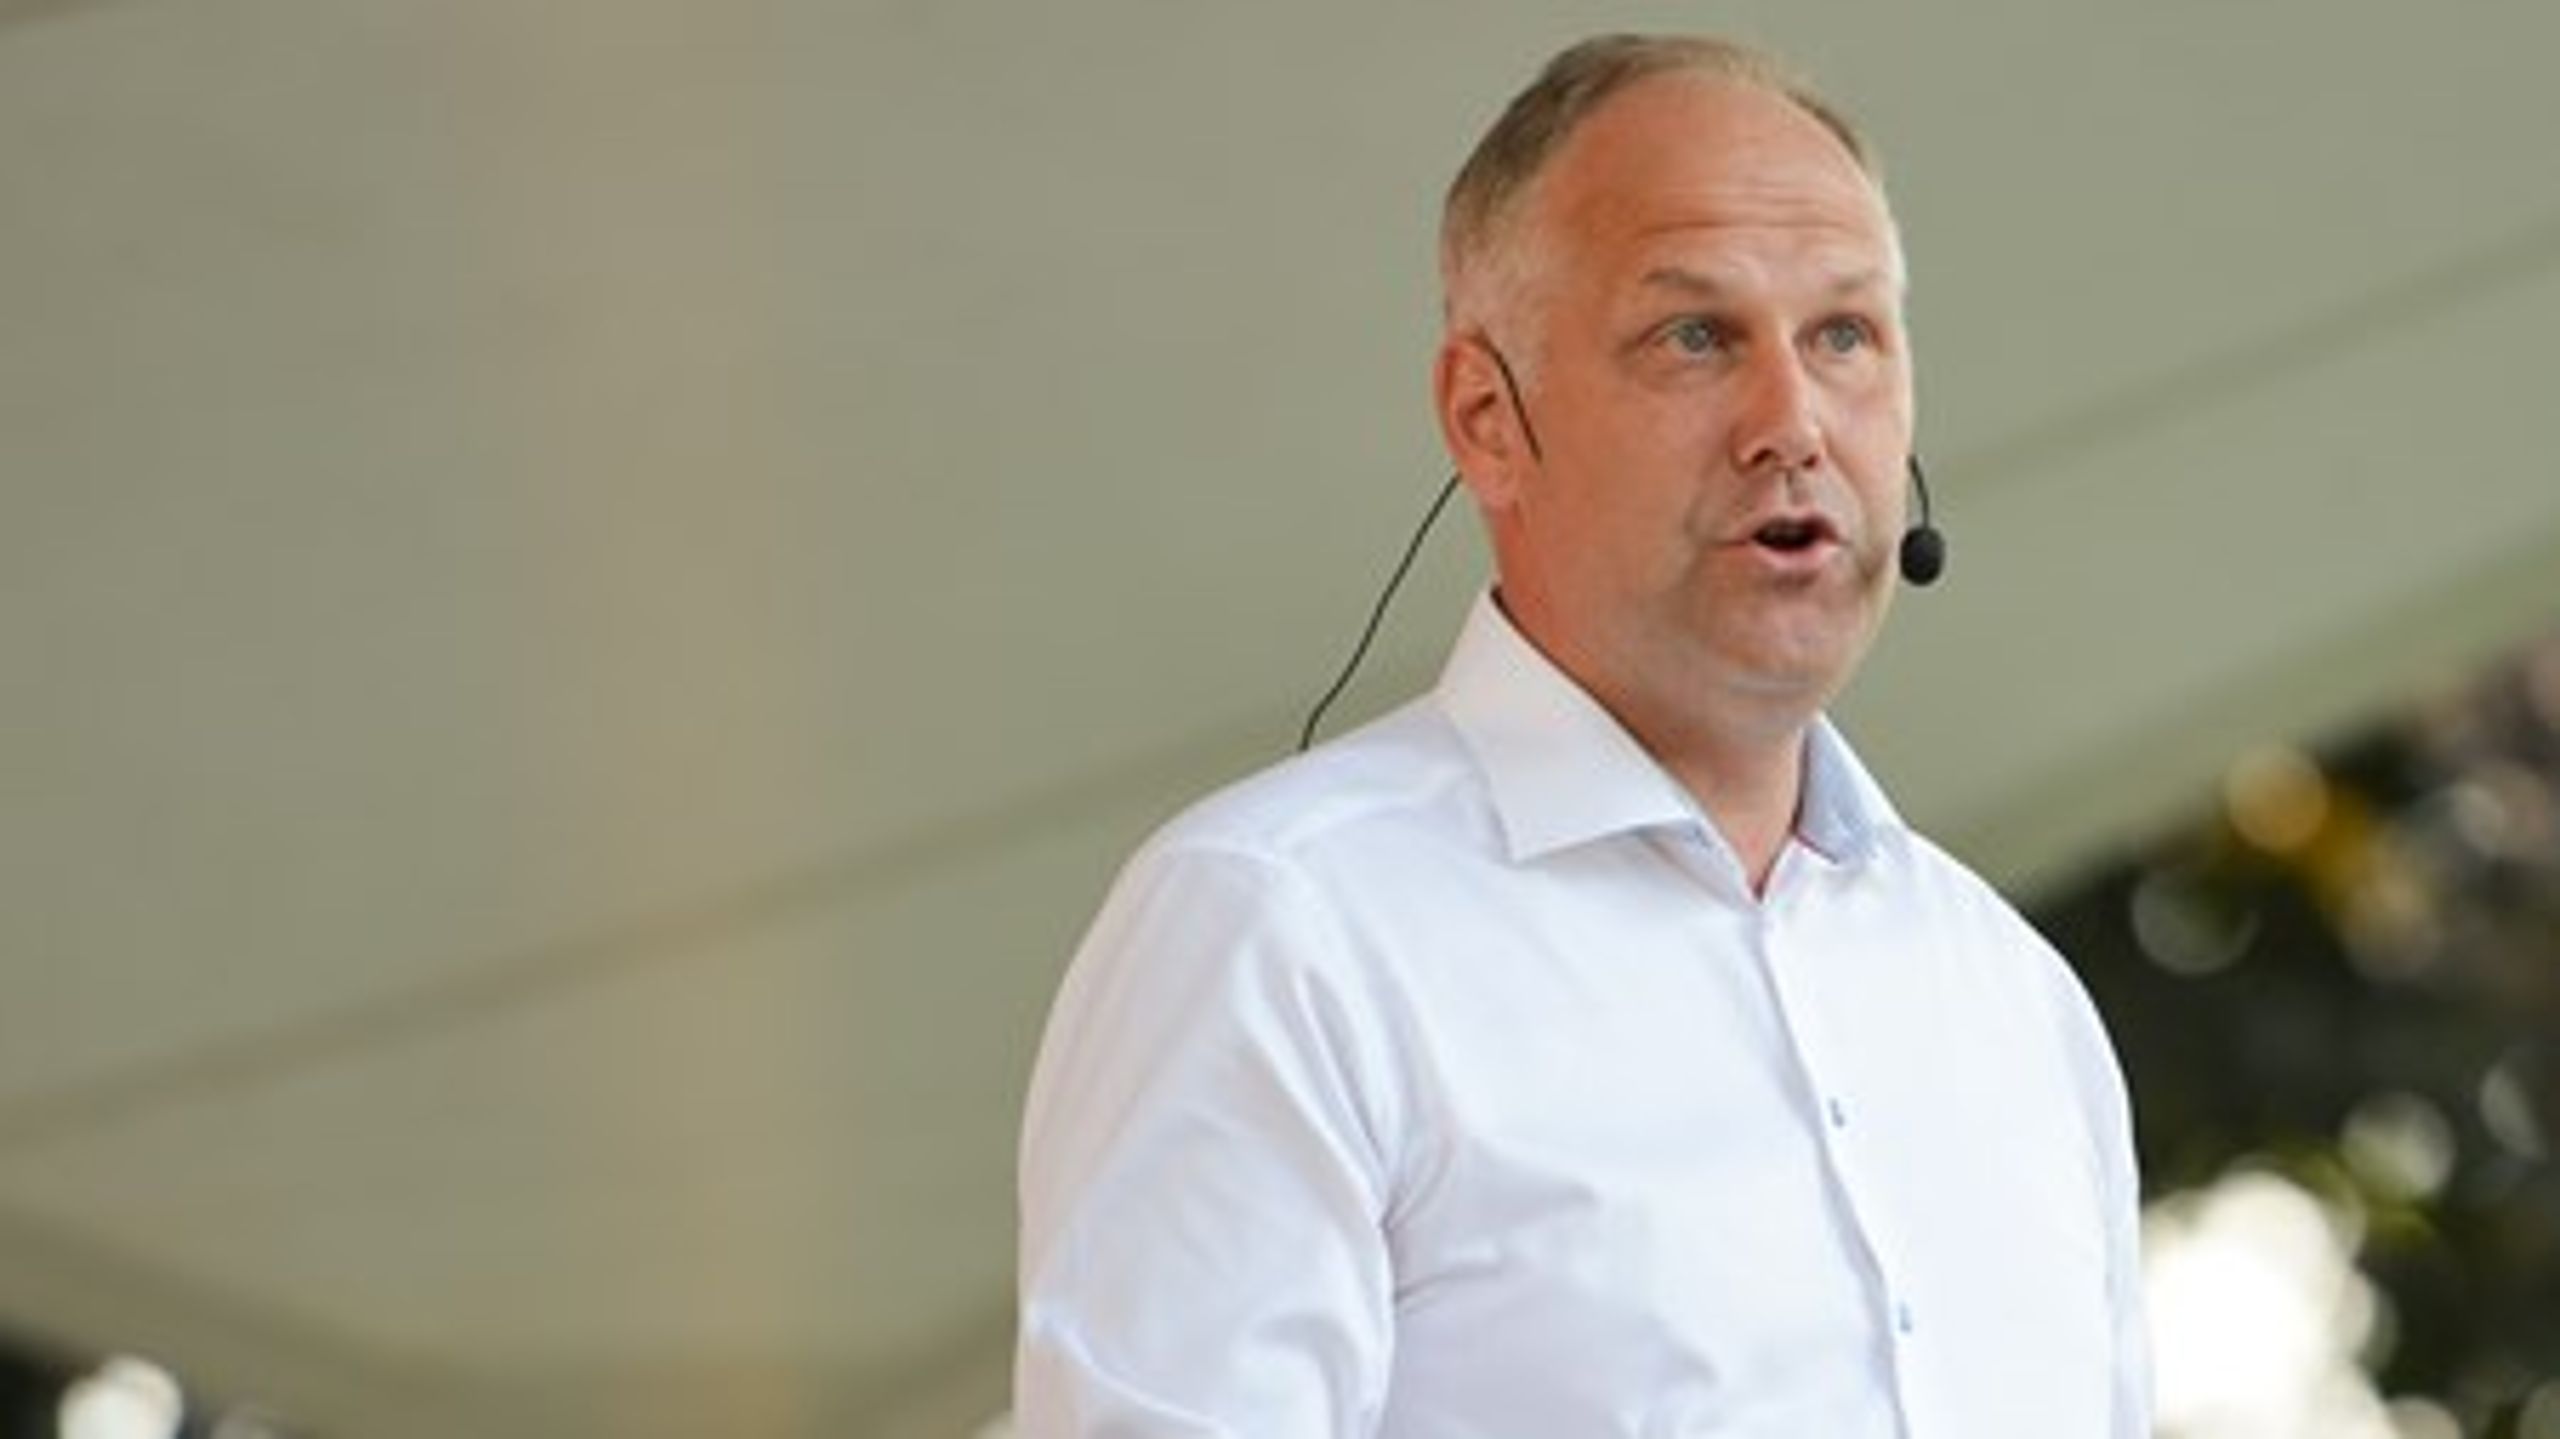 Vänsterledaren Jonas Sjöstedt vill stoppa företag som staplar visstidsanställningar på varandra